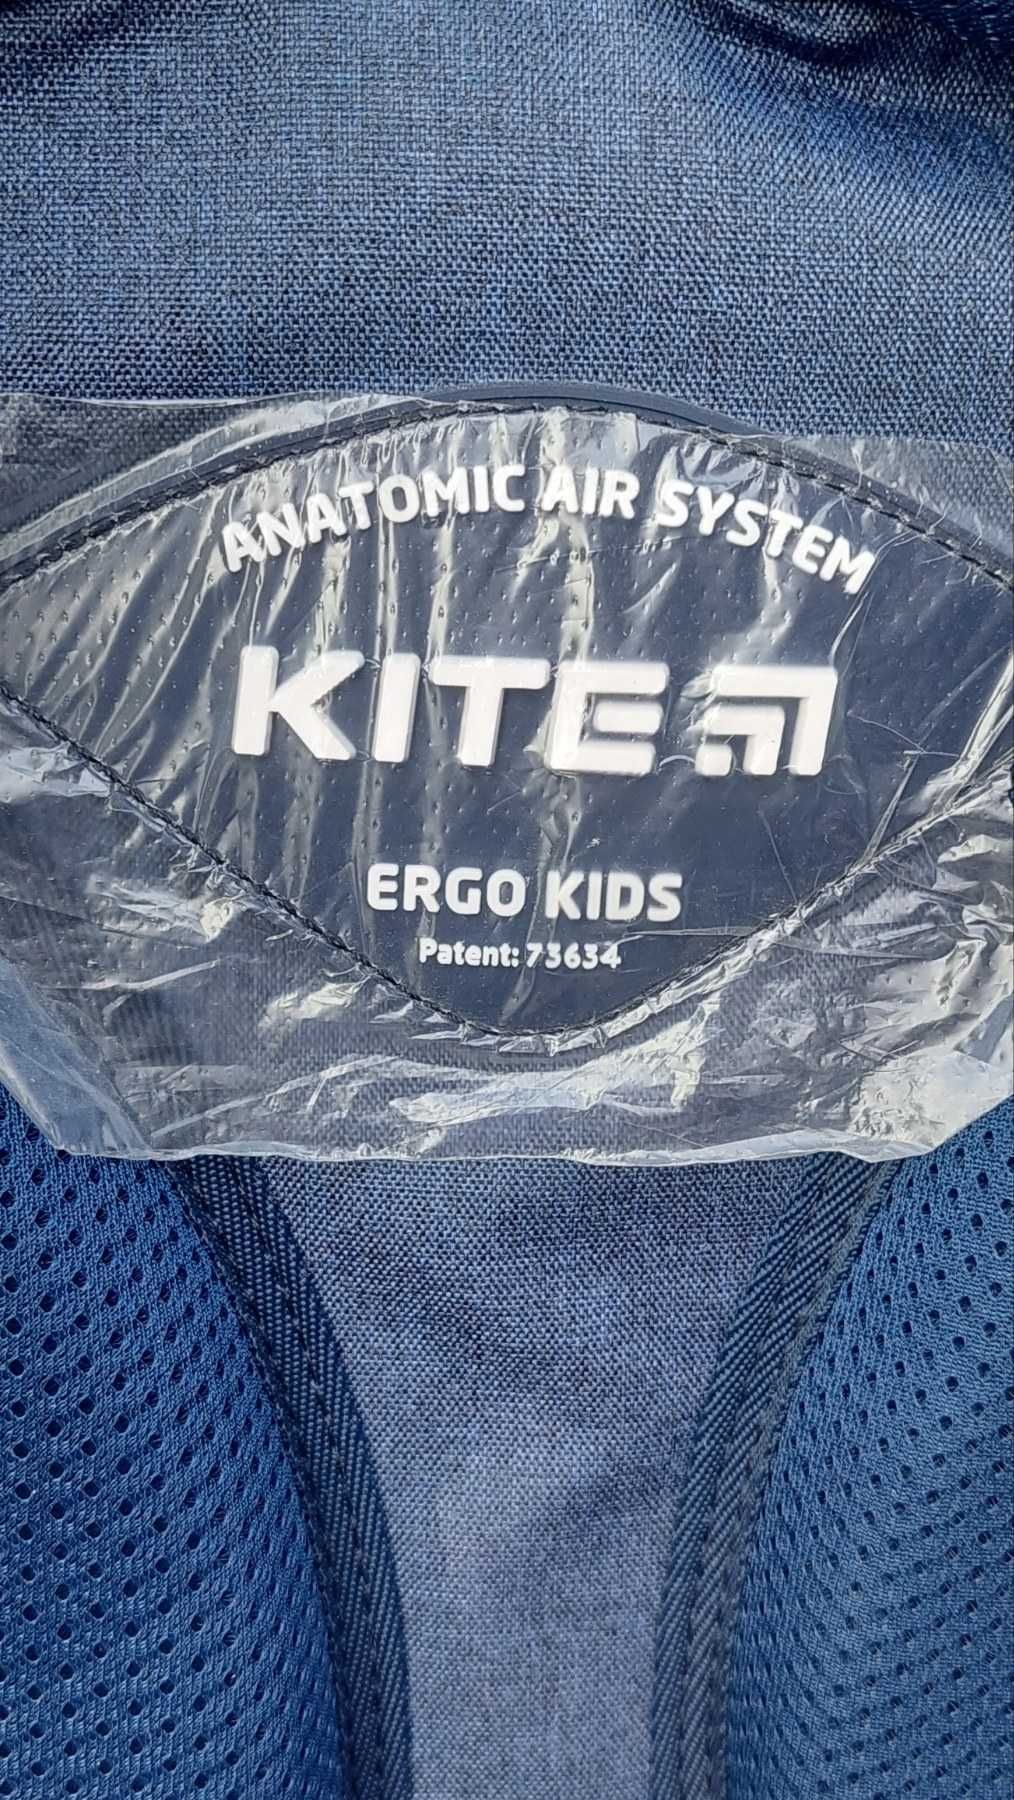 Школьный рюкзак, ранец Kite Education Beauty для девочки.